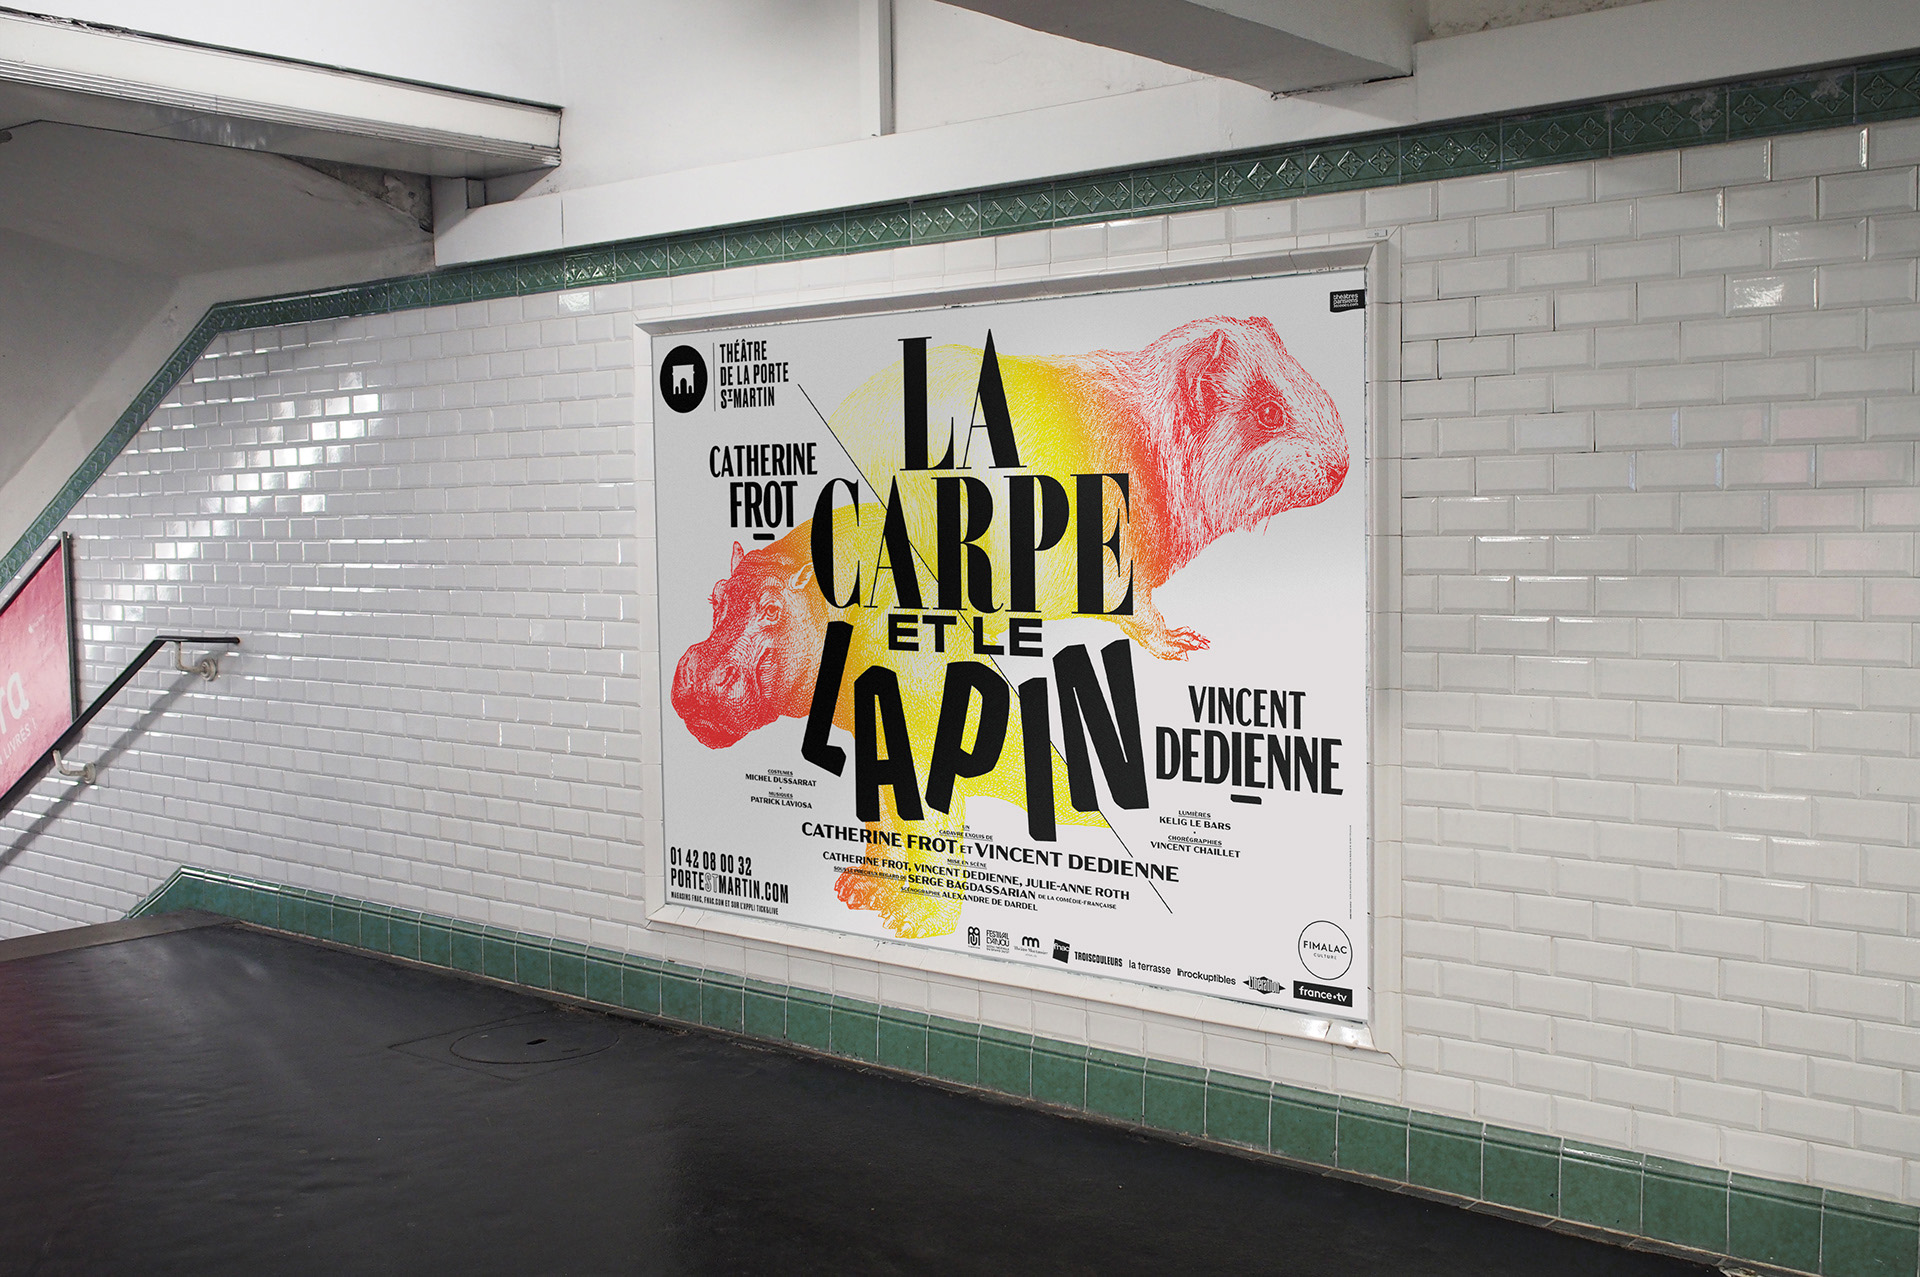 抽象大气的剧院海报设计,巴黎圣马丁剧院宣传海报设计欣赏。